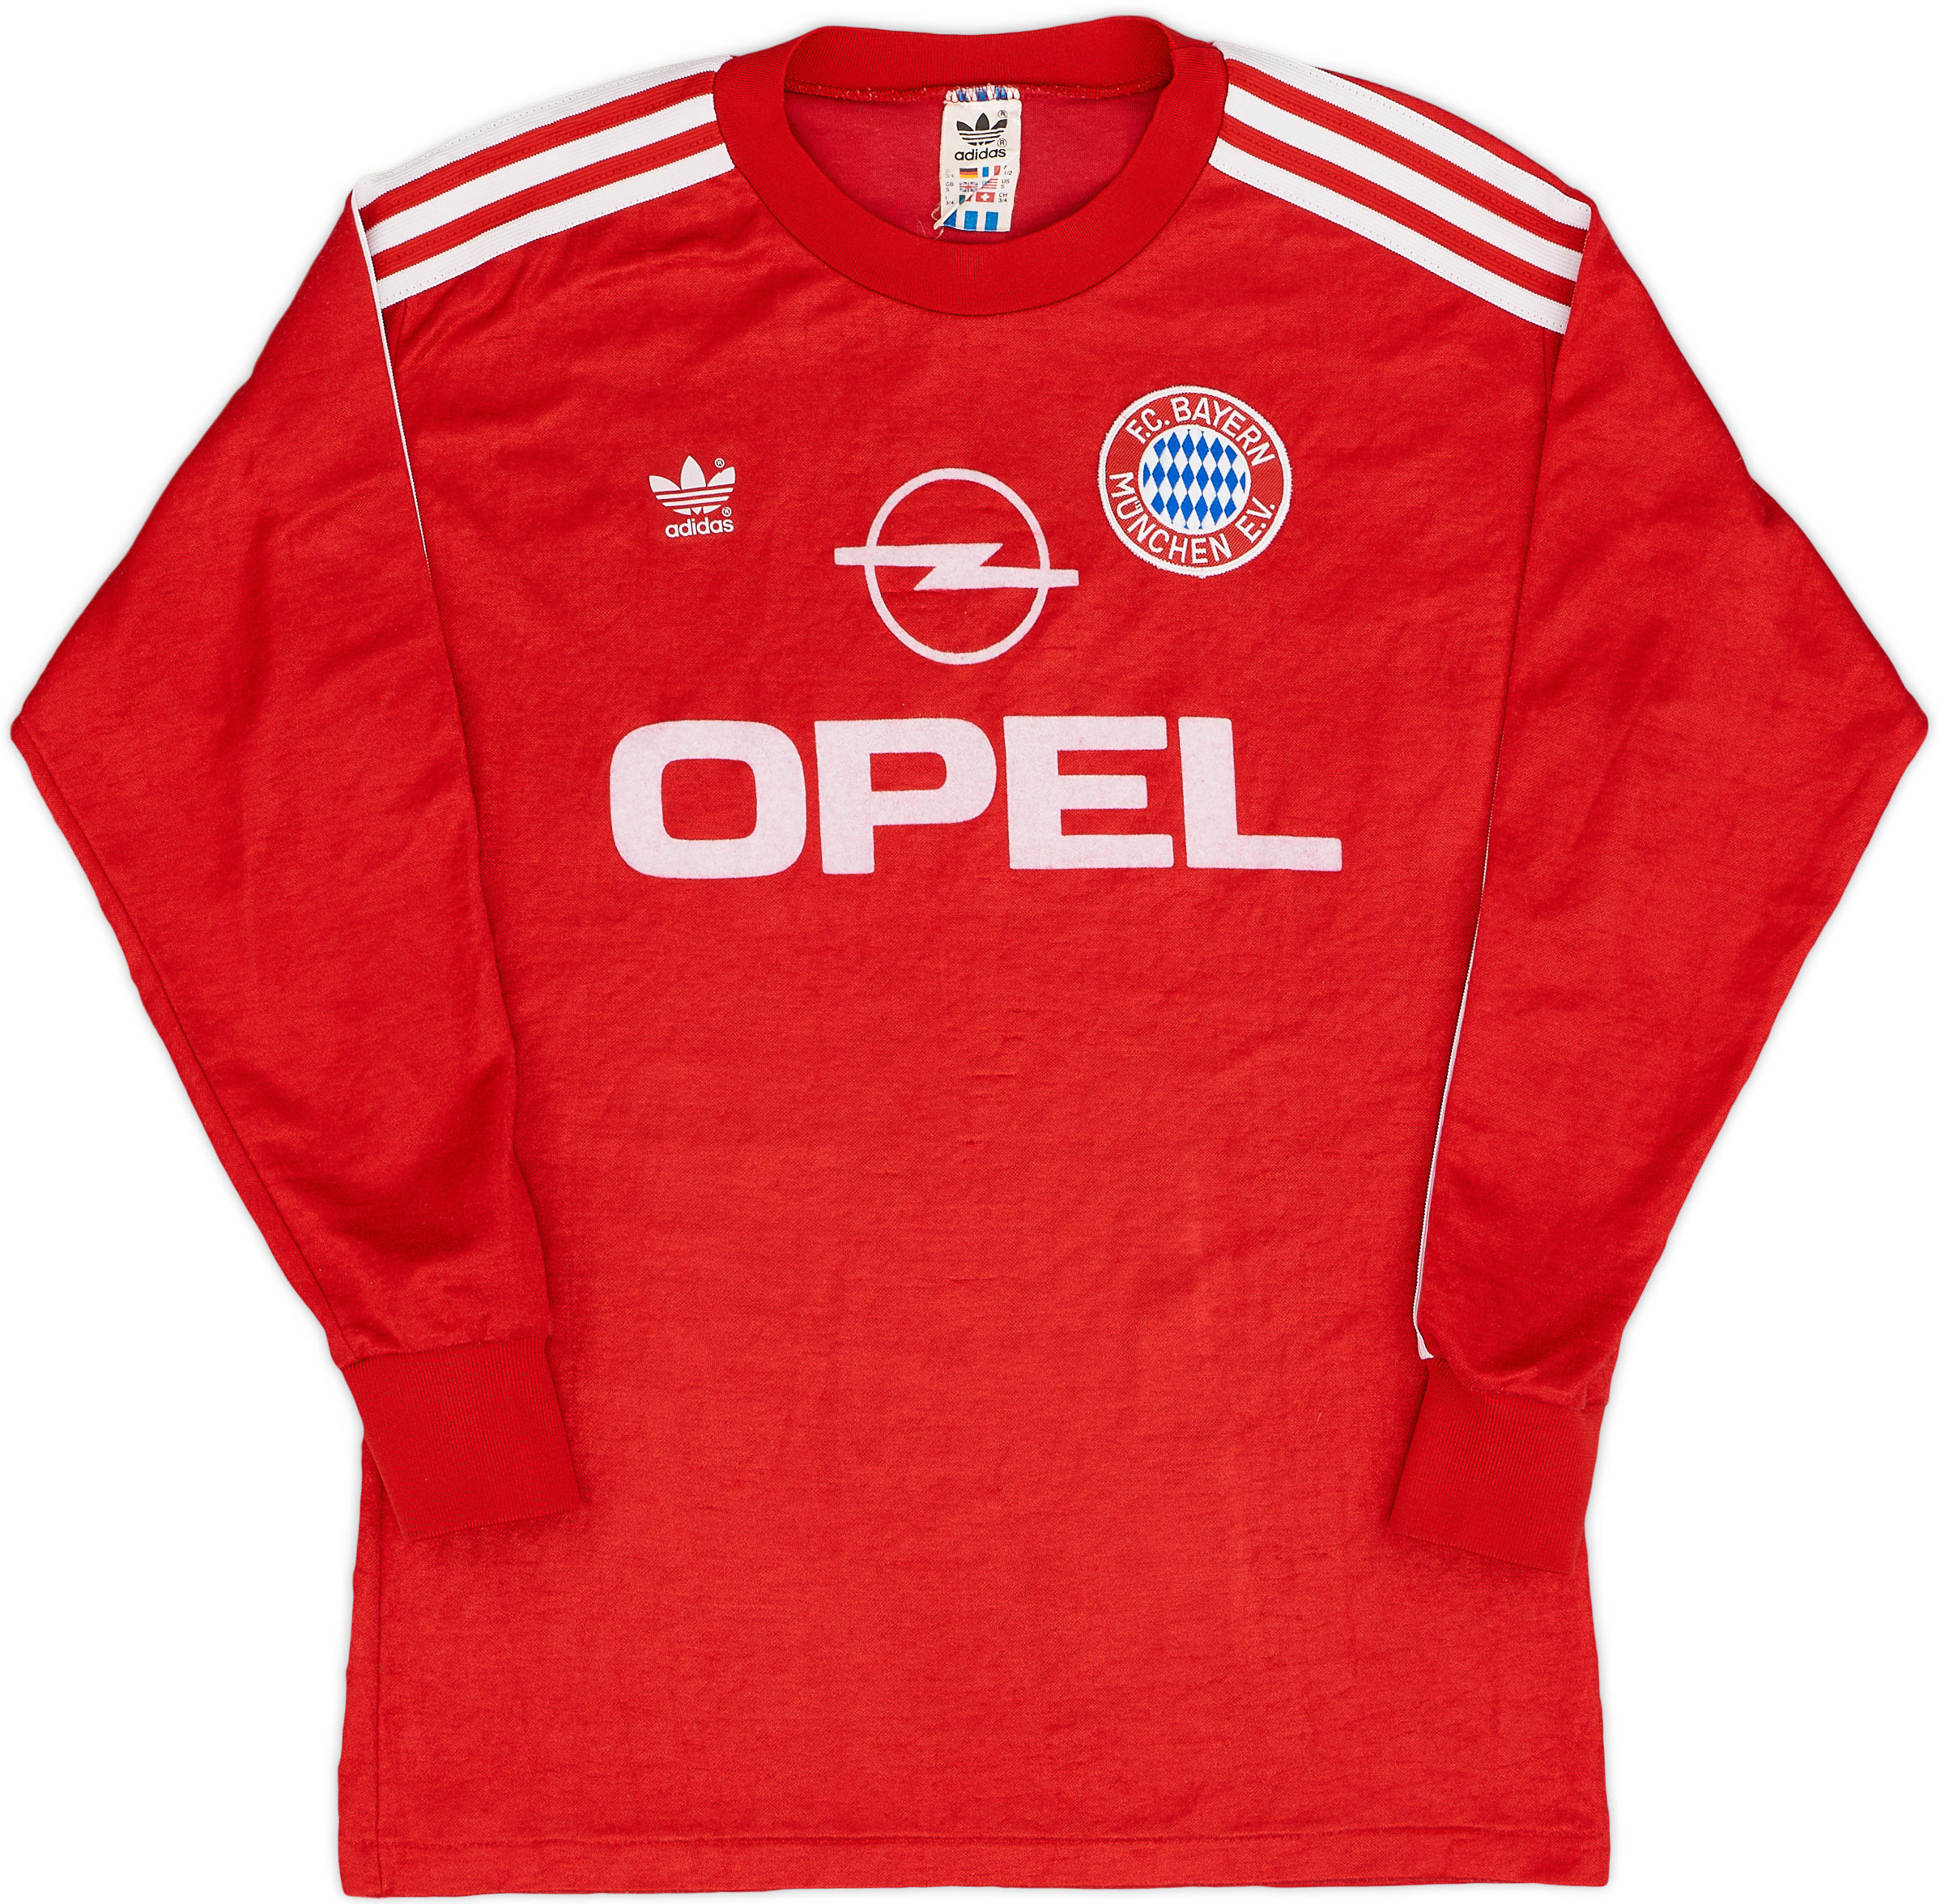 1989-91 Bayern Munich Home Shirt - Excellent 8/10 - ()